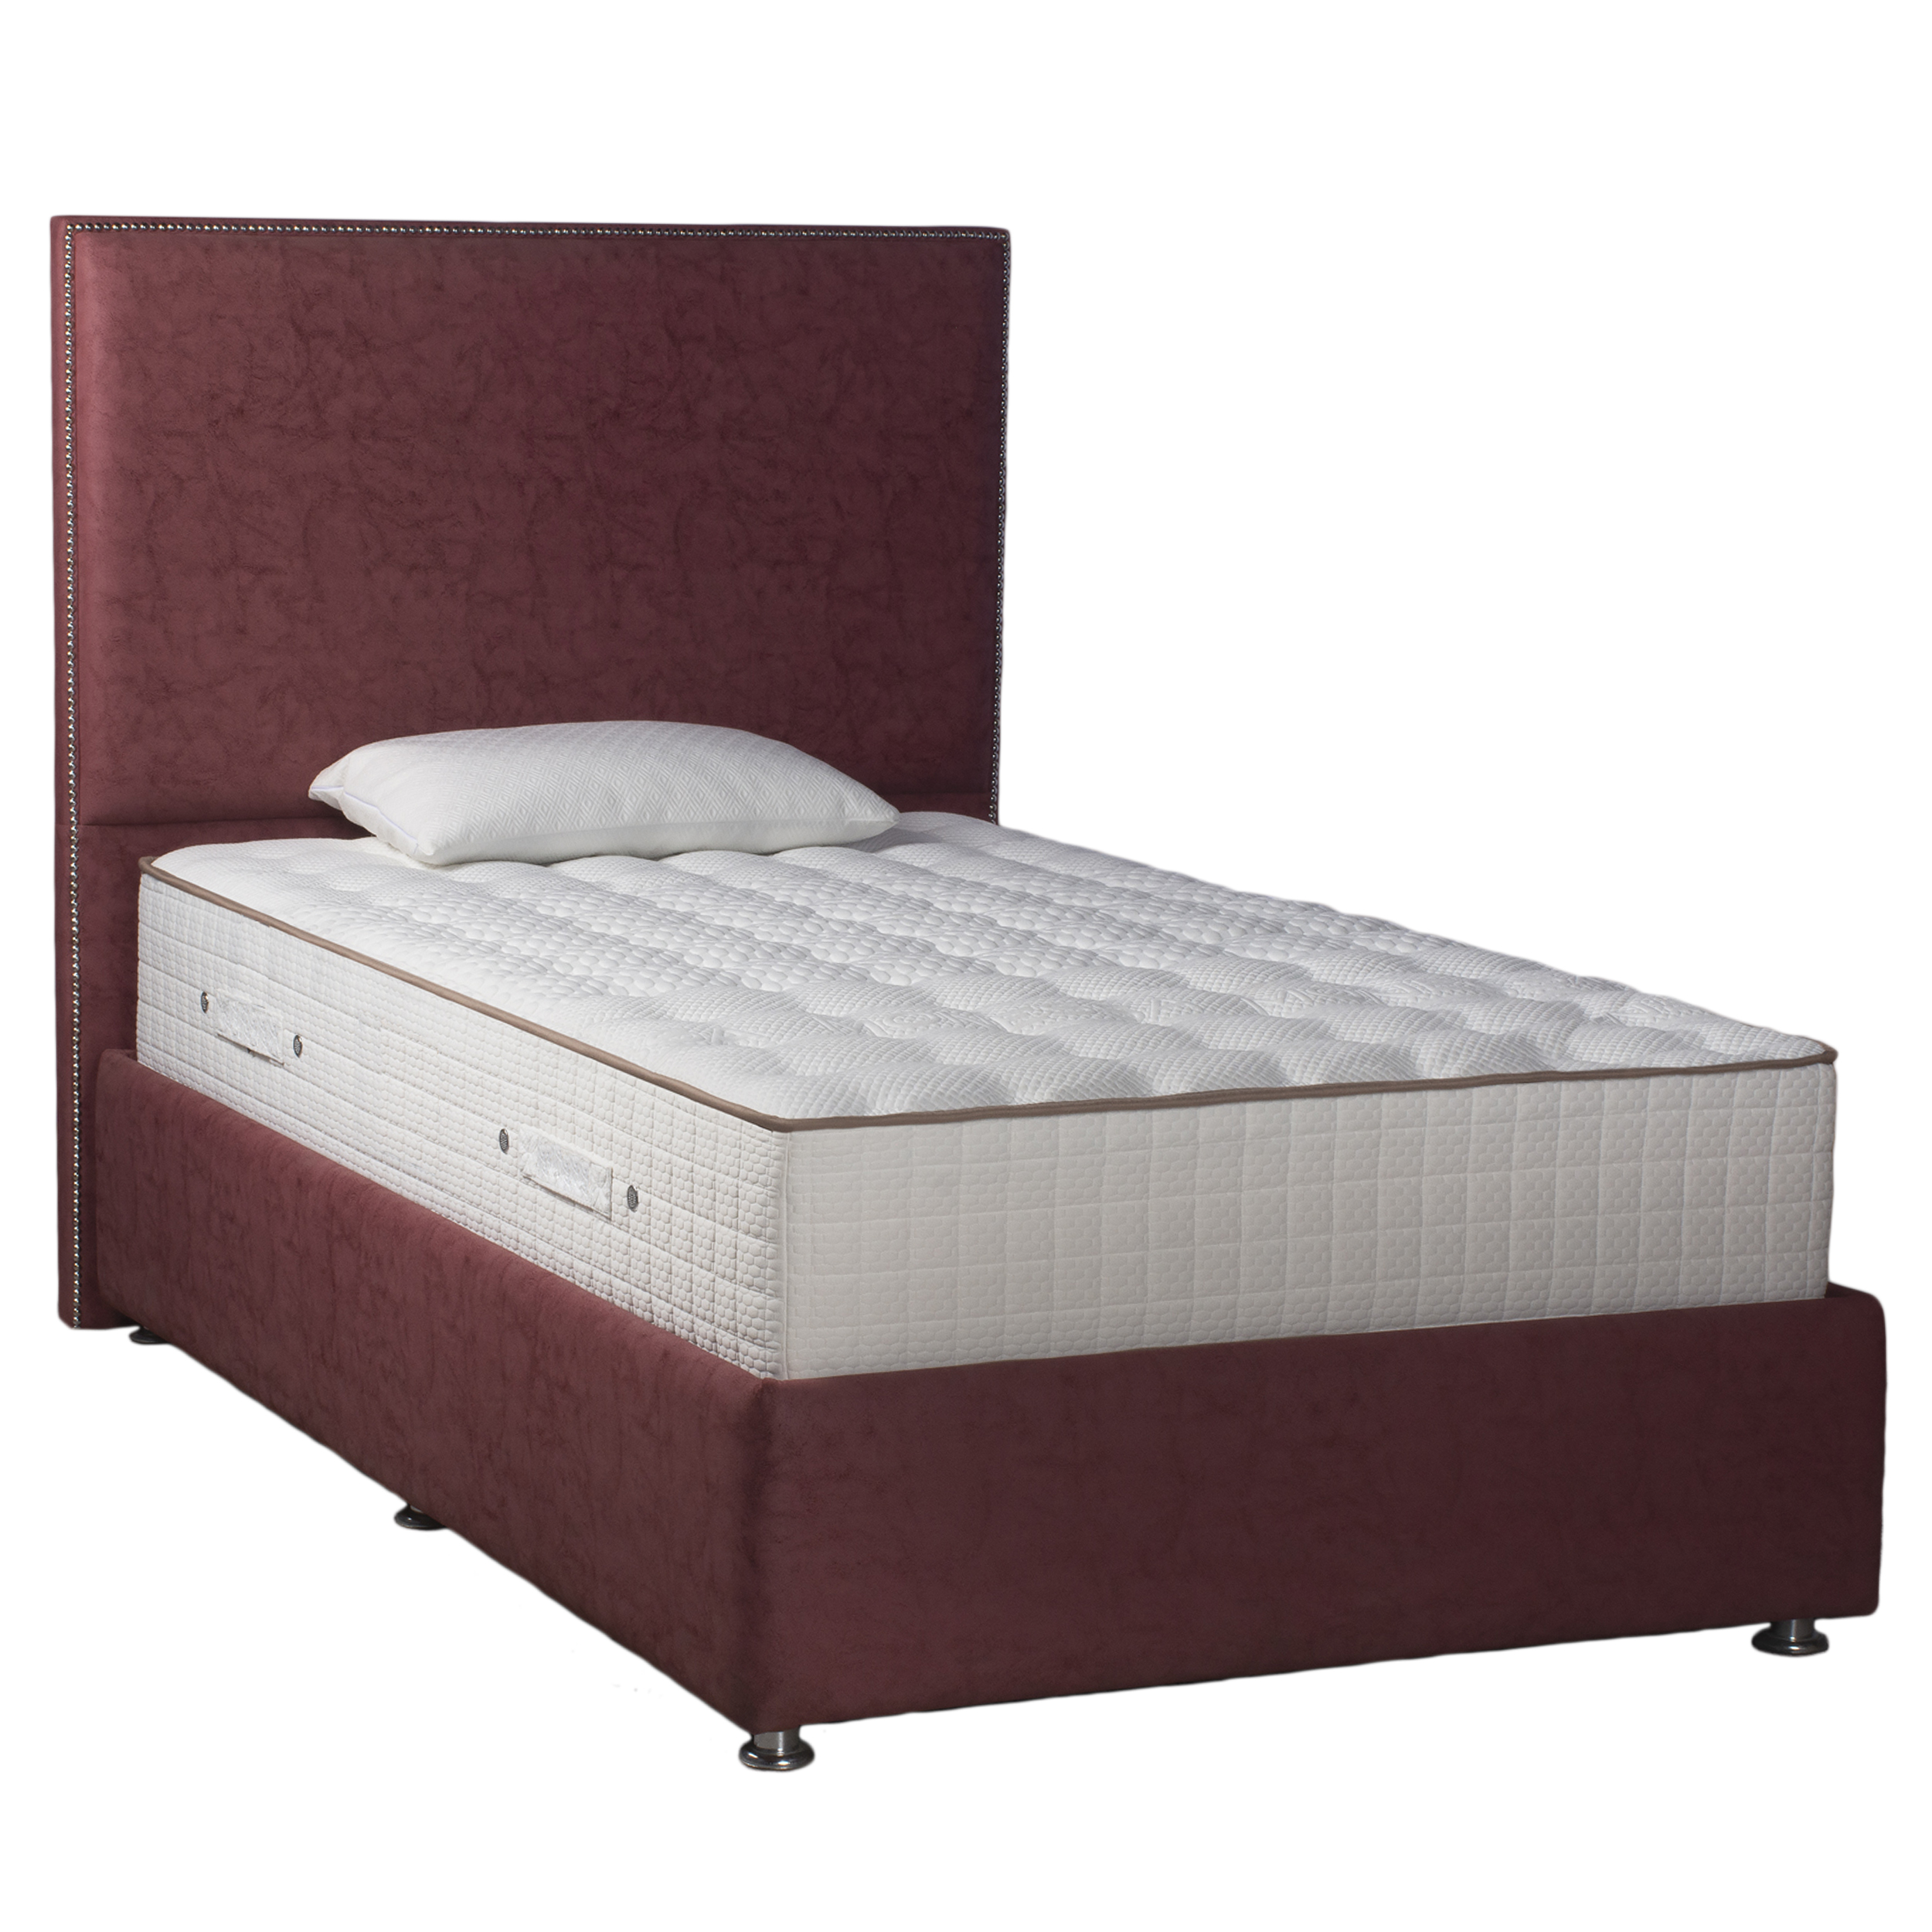 تخت خواب یک نفره مدل MT90 سایز 200×90 سانتی متر